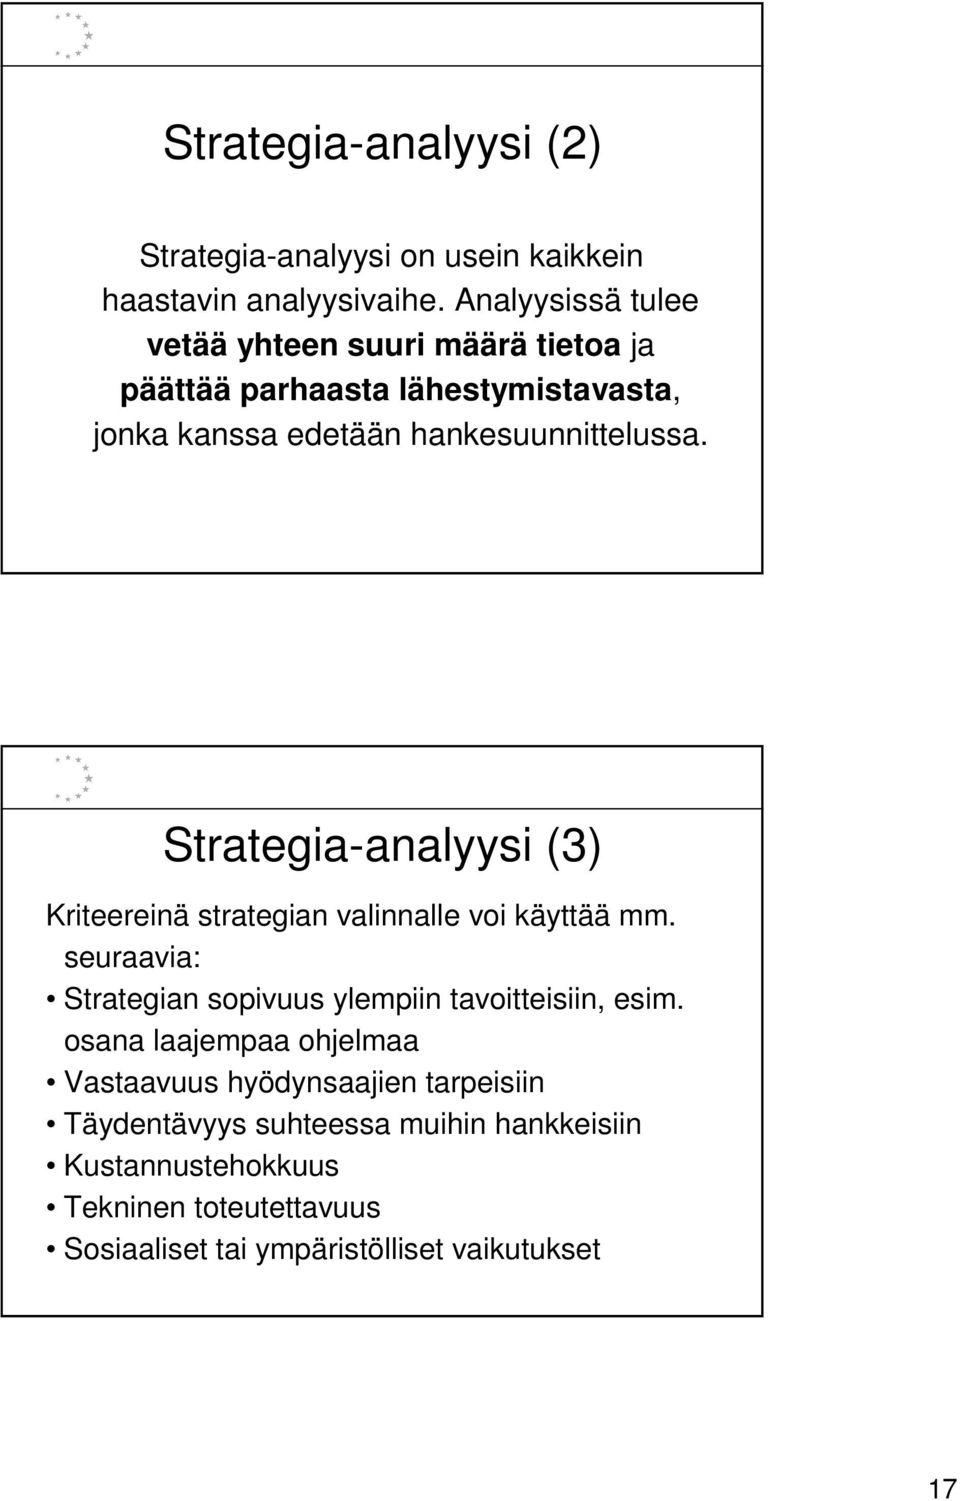 Strategia-analyysi (3) Kriteereinä strategian valinnalle voi käyttää mm. seuraavia: Strategian sopivuus ylempiin tavoitteisiin, esim.